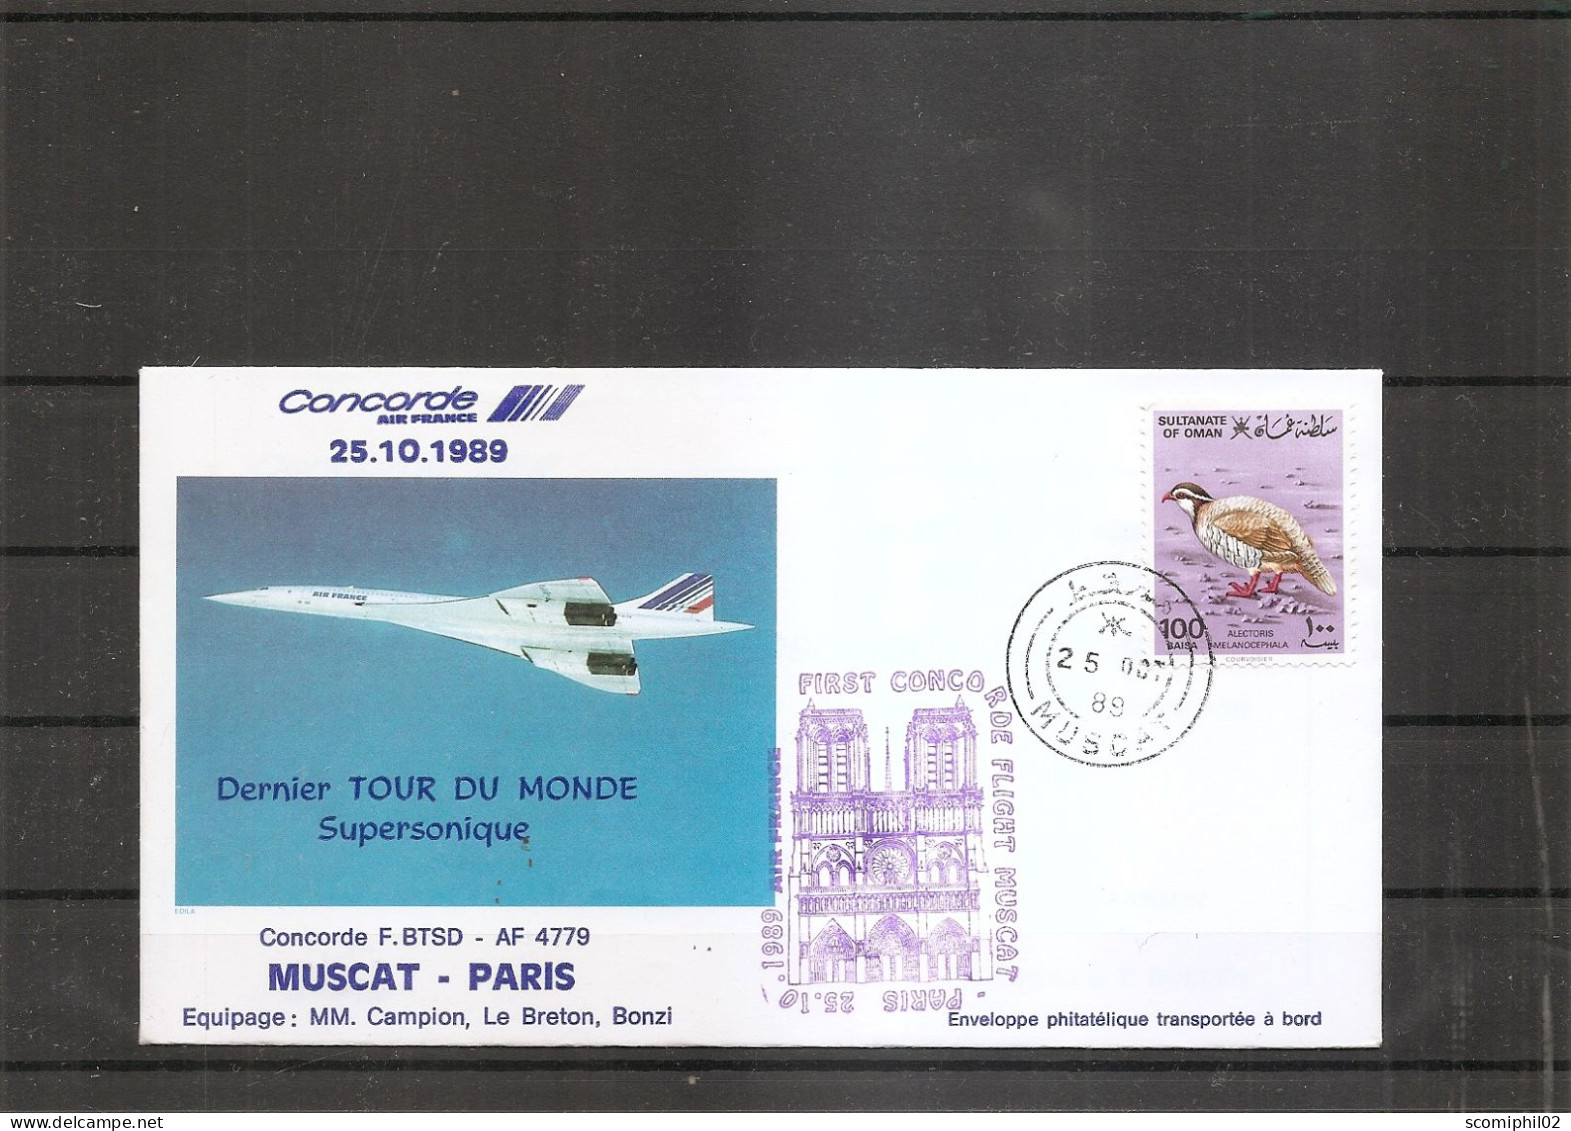 Oman ( Vol Concorde Mascate - Paris De 1988 à Voir) - Oman